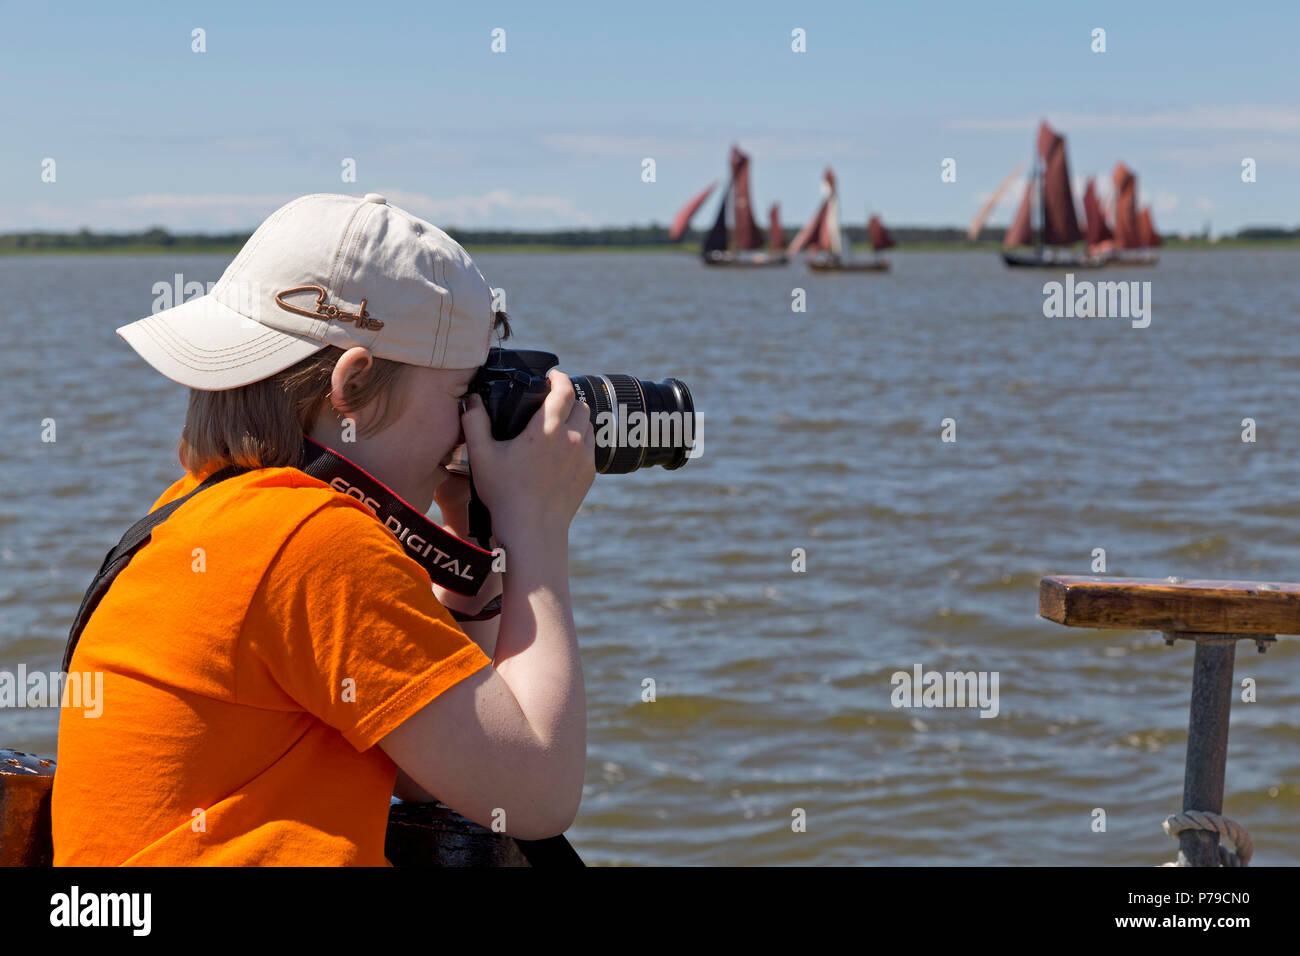 Junge Fotos von Zeesboot Regatta, Wustrow, Fischland, Mecklenburg-Vorpommern, Deutschland Stockfoto